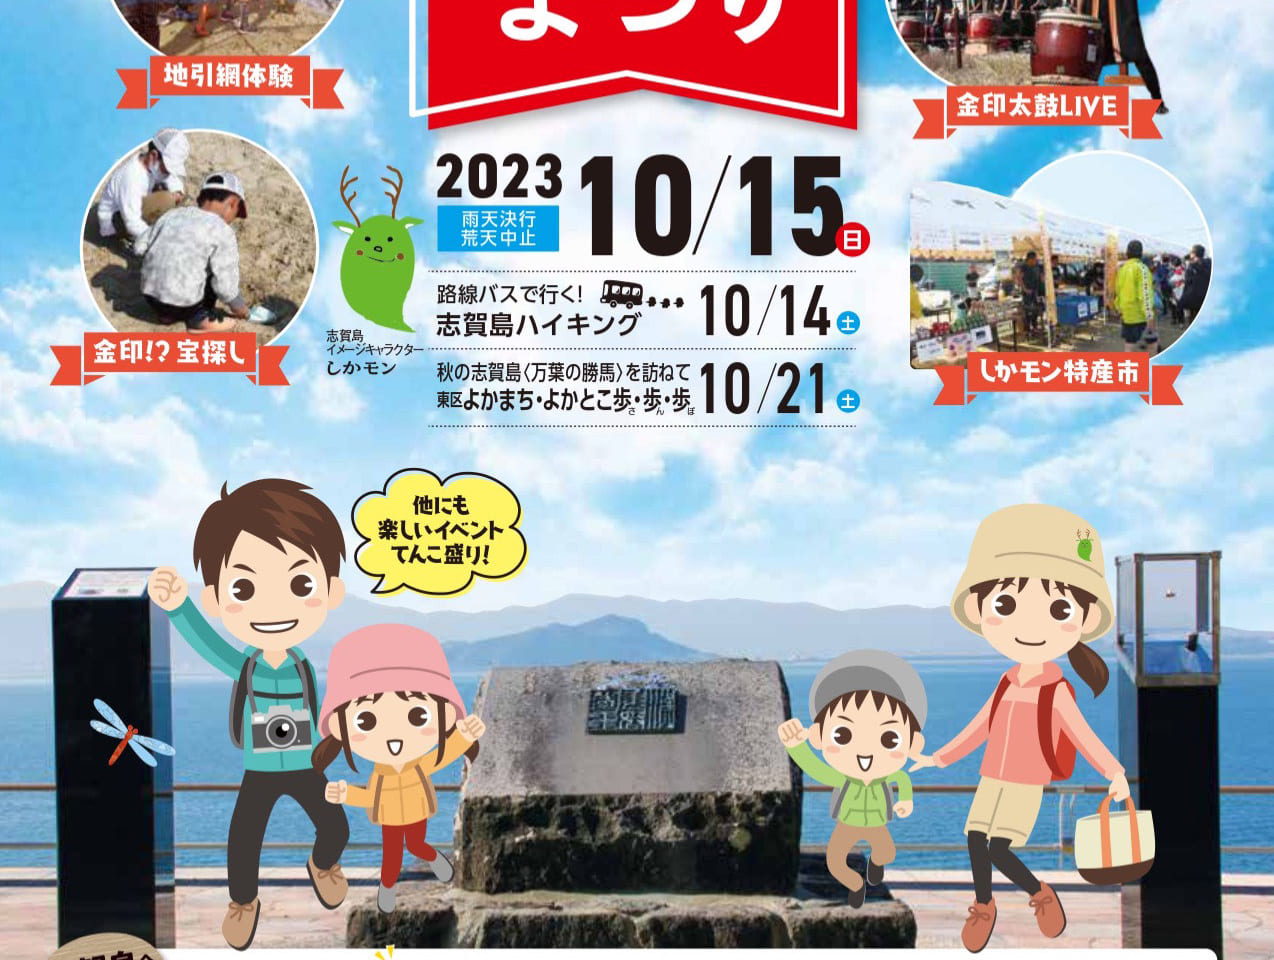 2023年10月15日(日)に、志賀島にて「志賀島・金印まつり」が開催されます。（雨天決行・荒天中止となりますので、ご注意下さい）